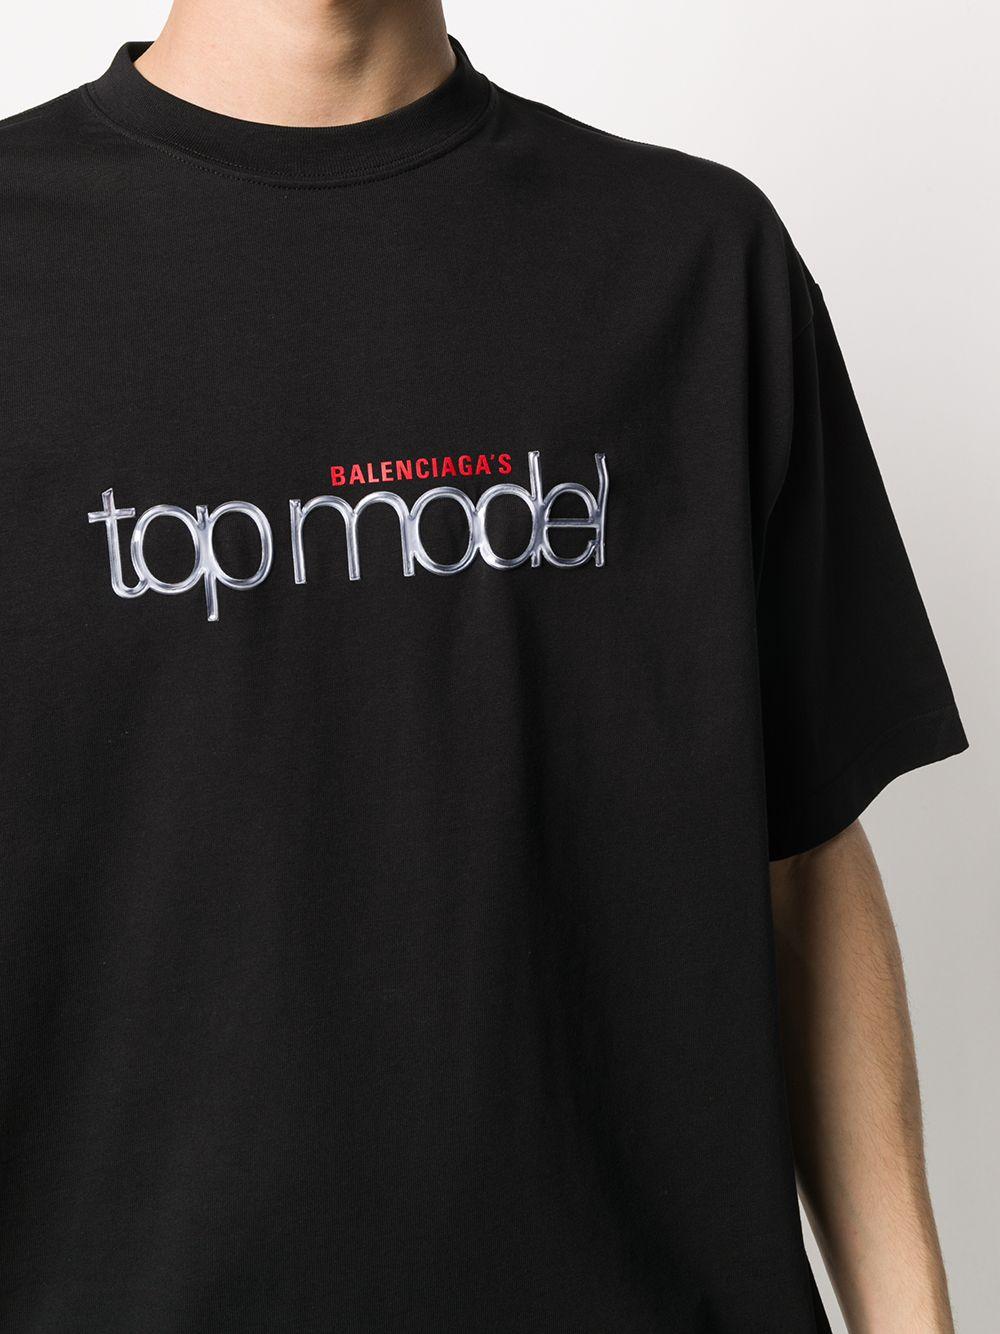 Balenciaga Baumwolle 'Topmodel' T-Shirt in Schwarz für Herren - Lyst